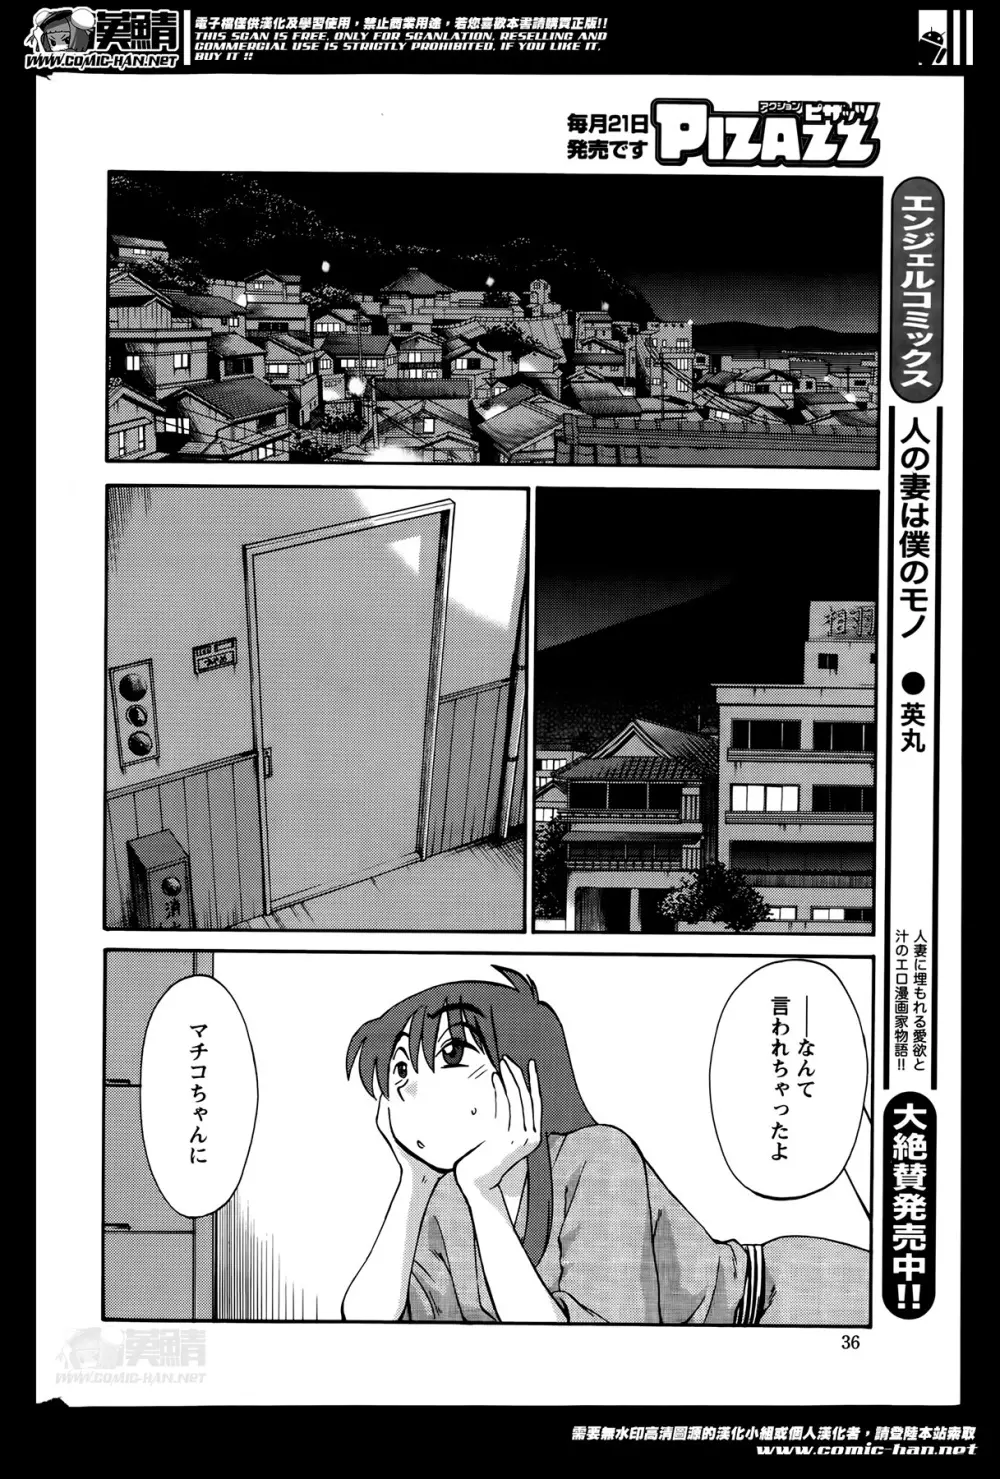 [Tsuya Tsuya] Hirugao Ch.01-02+04+14-26 314ページ